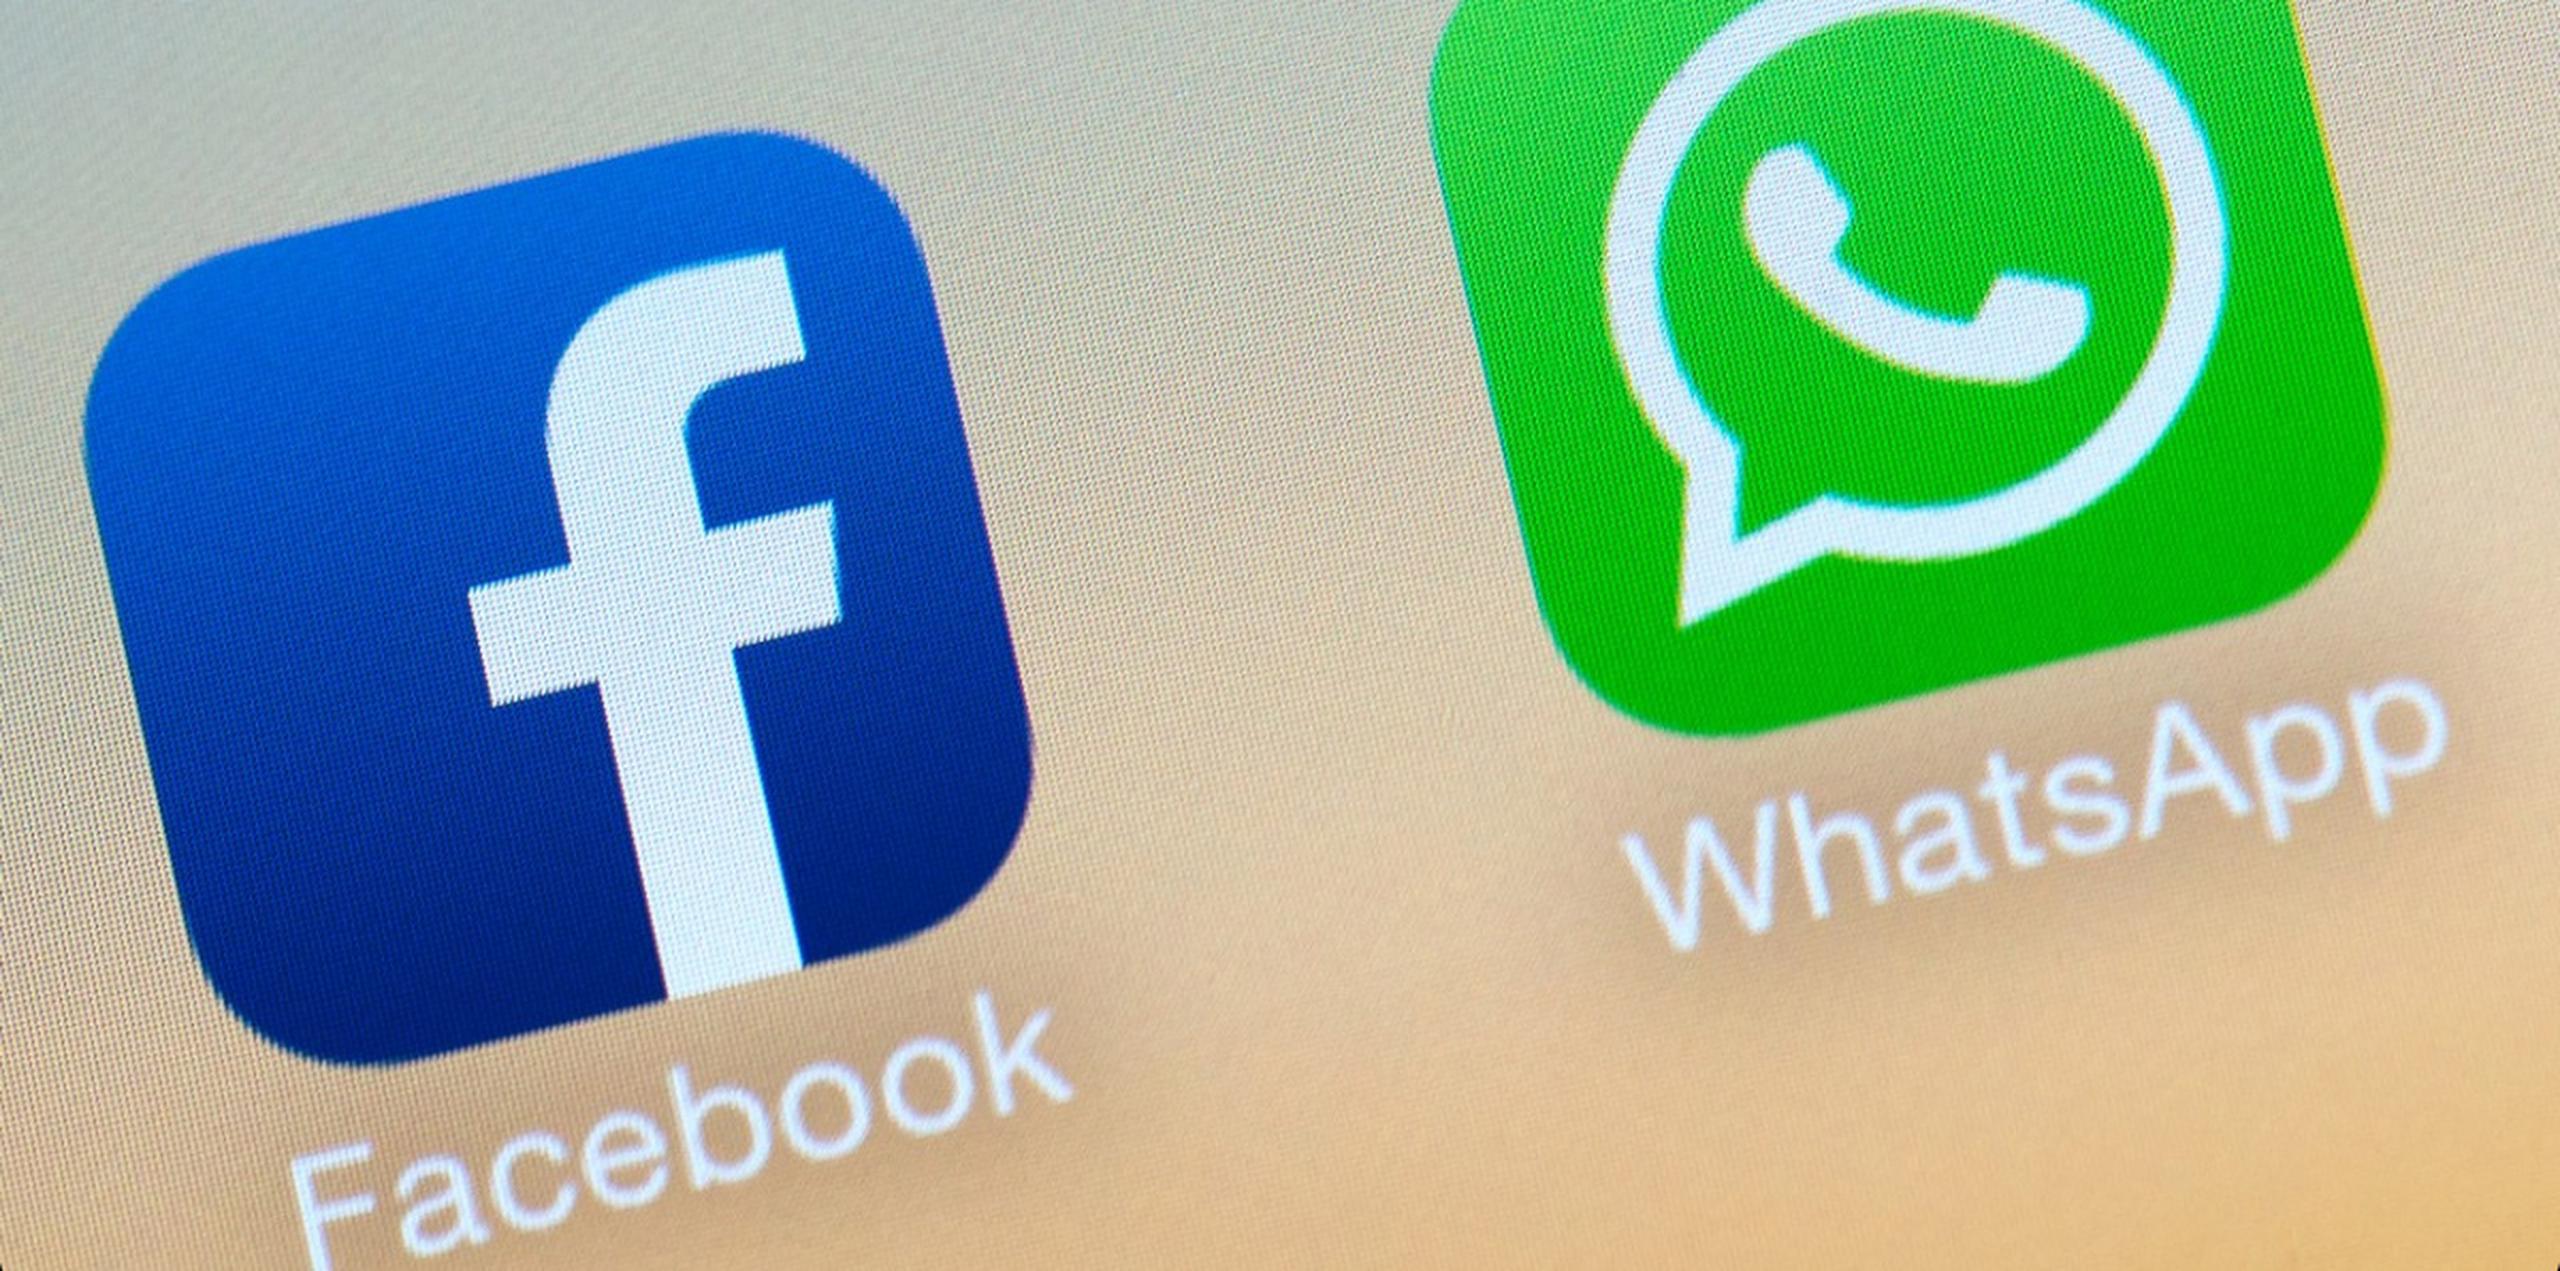 La medida es un cambio sutil pero significativo para WhatsApp, que desde hace mucho ha prometido salvaguardar la privacidad de más de mil millones de usuarios en todo el mundo.